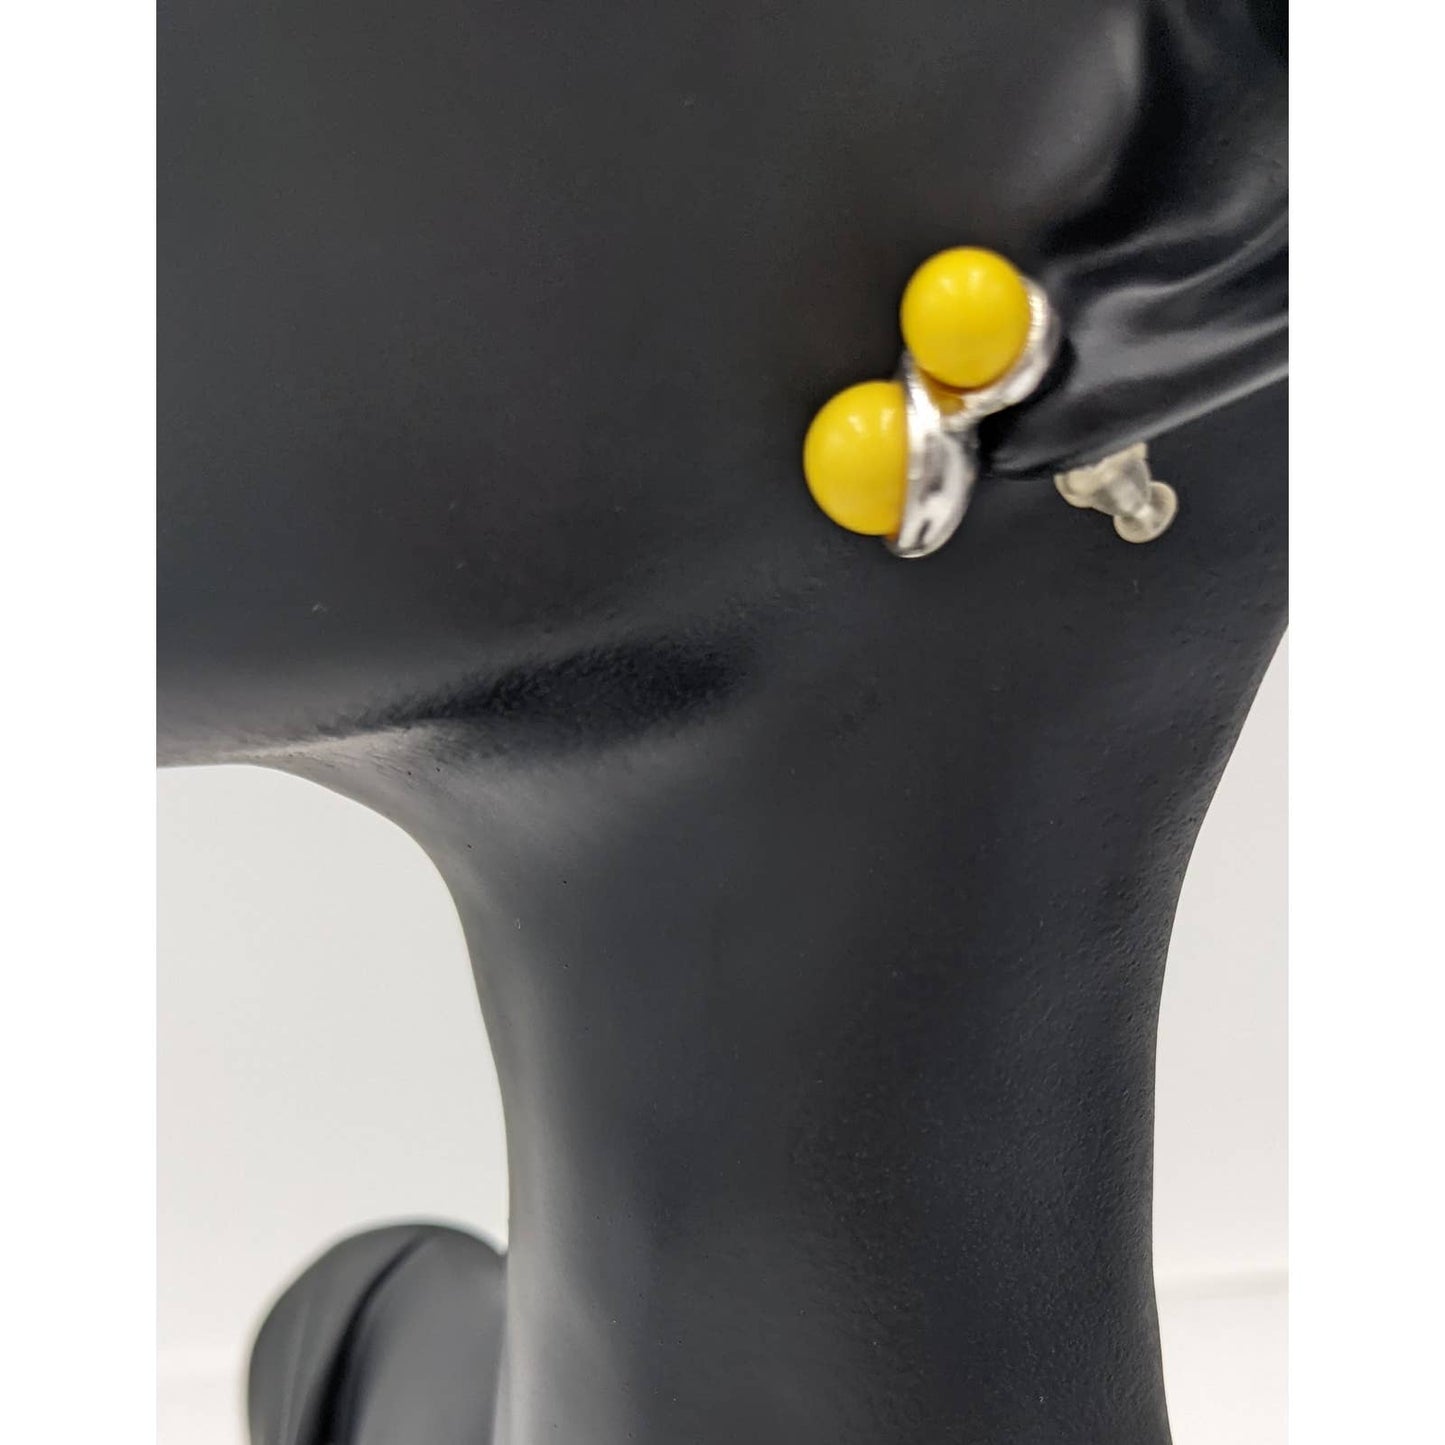 Yellow Stud Earrings For Women Classy Cute Set Fashion Jewelry